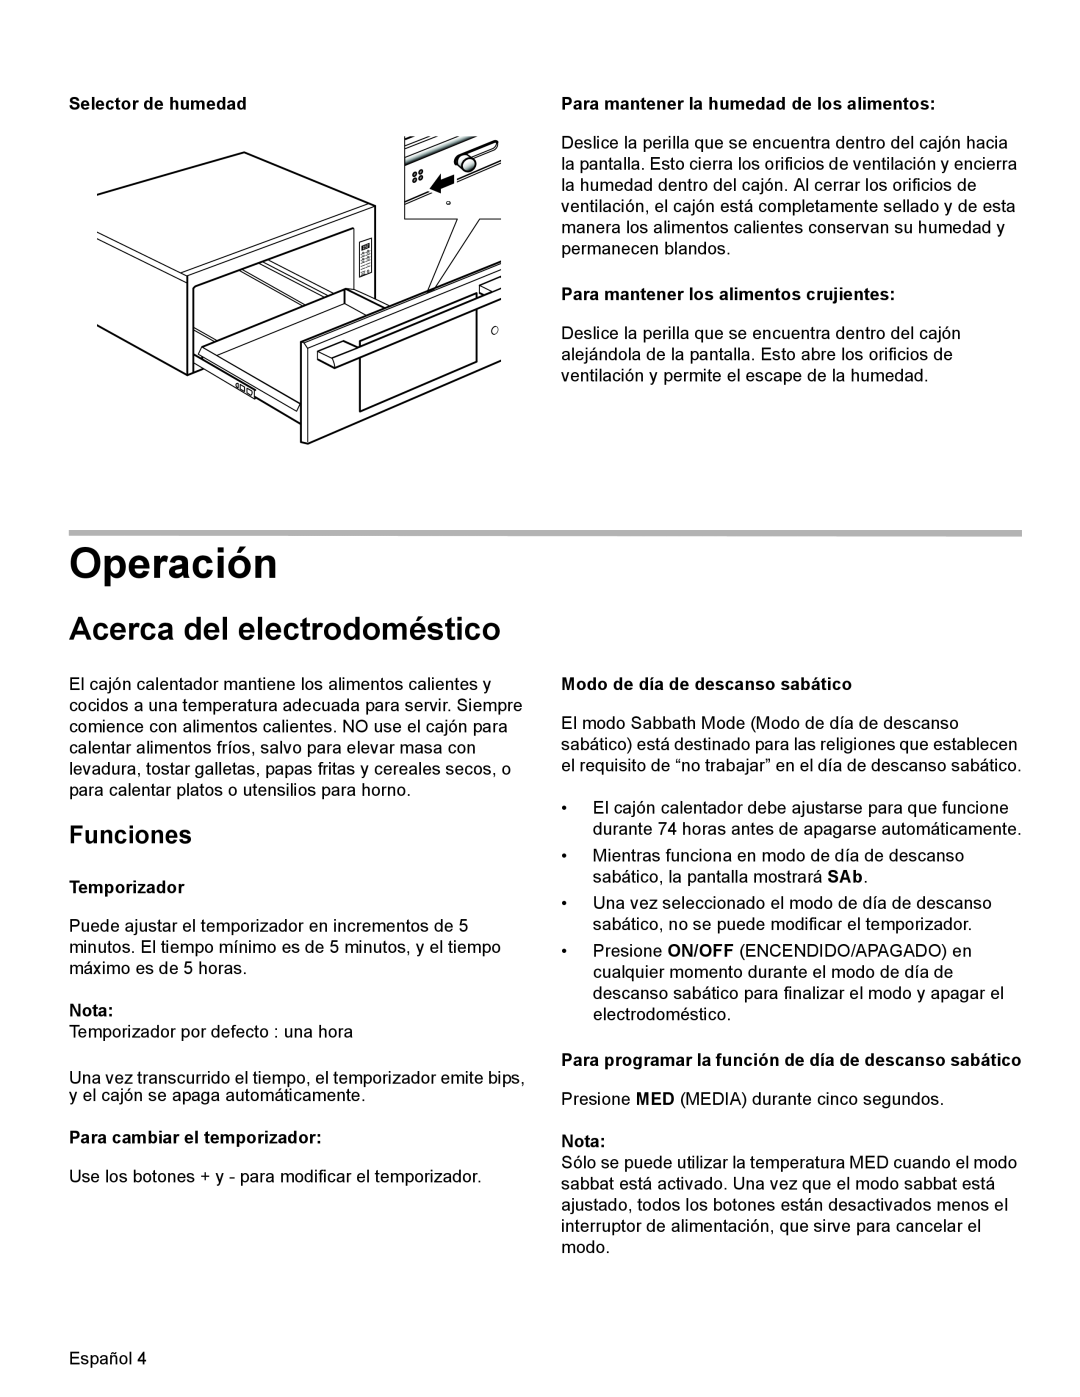 Thermador WD30, WD27 manual Operación, Acerca del electrodoméstico, Funciones, Selector de humedad, Temporizador, Nota 